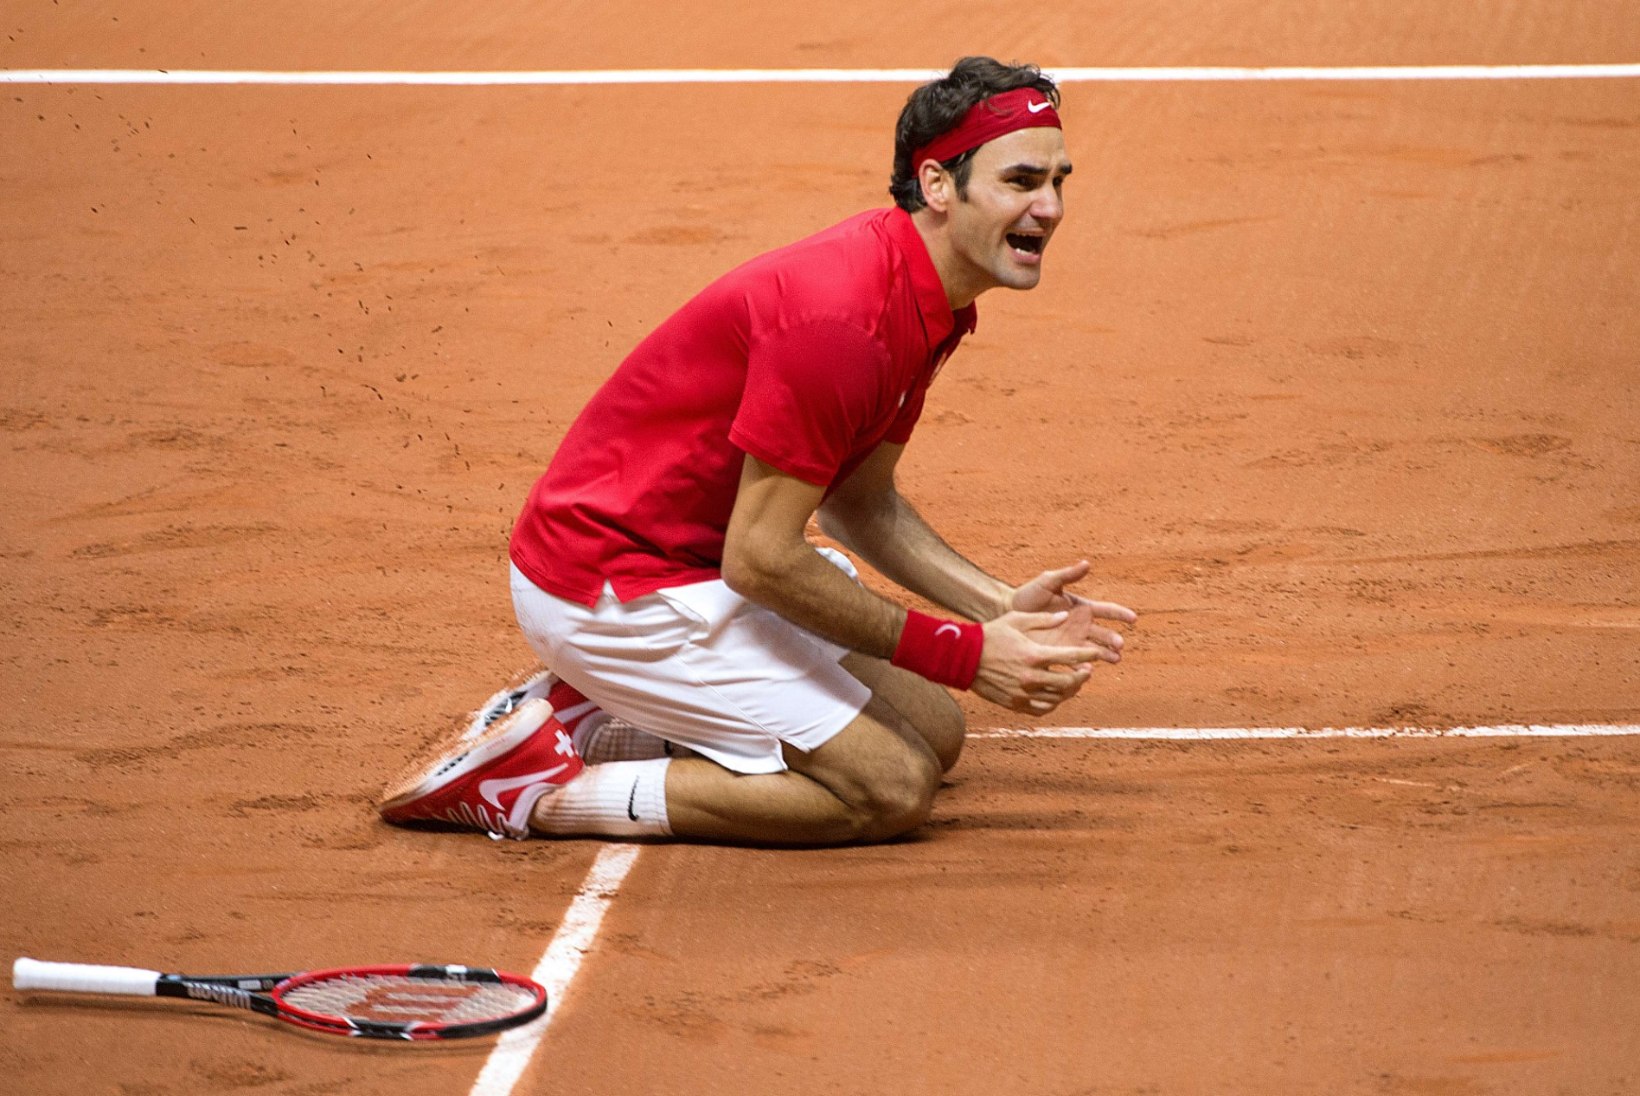 FOTOD: Roger Federer tõi Šveitsile ajaloolise võidu